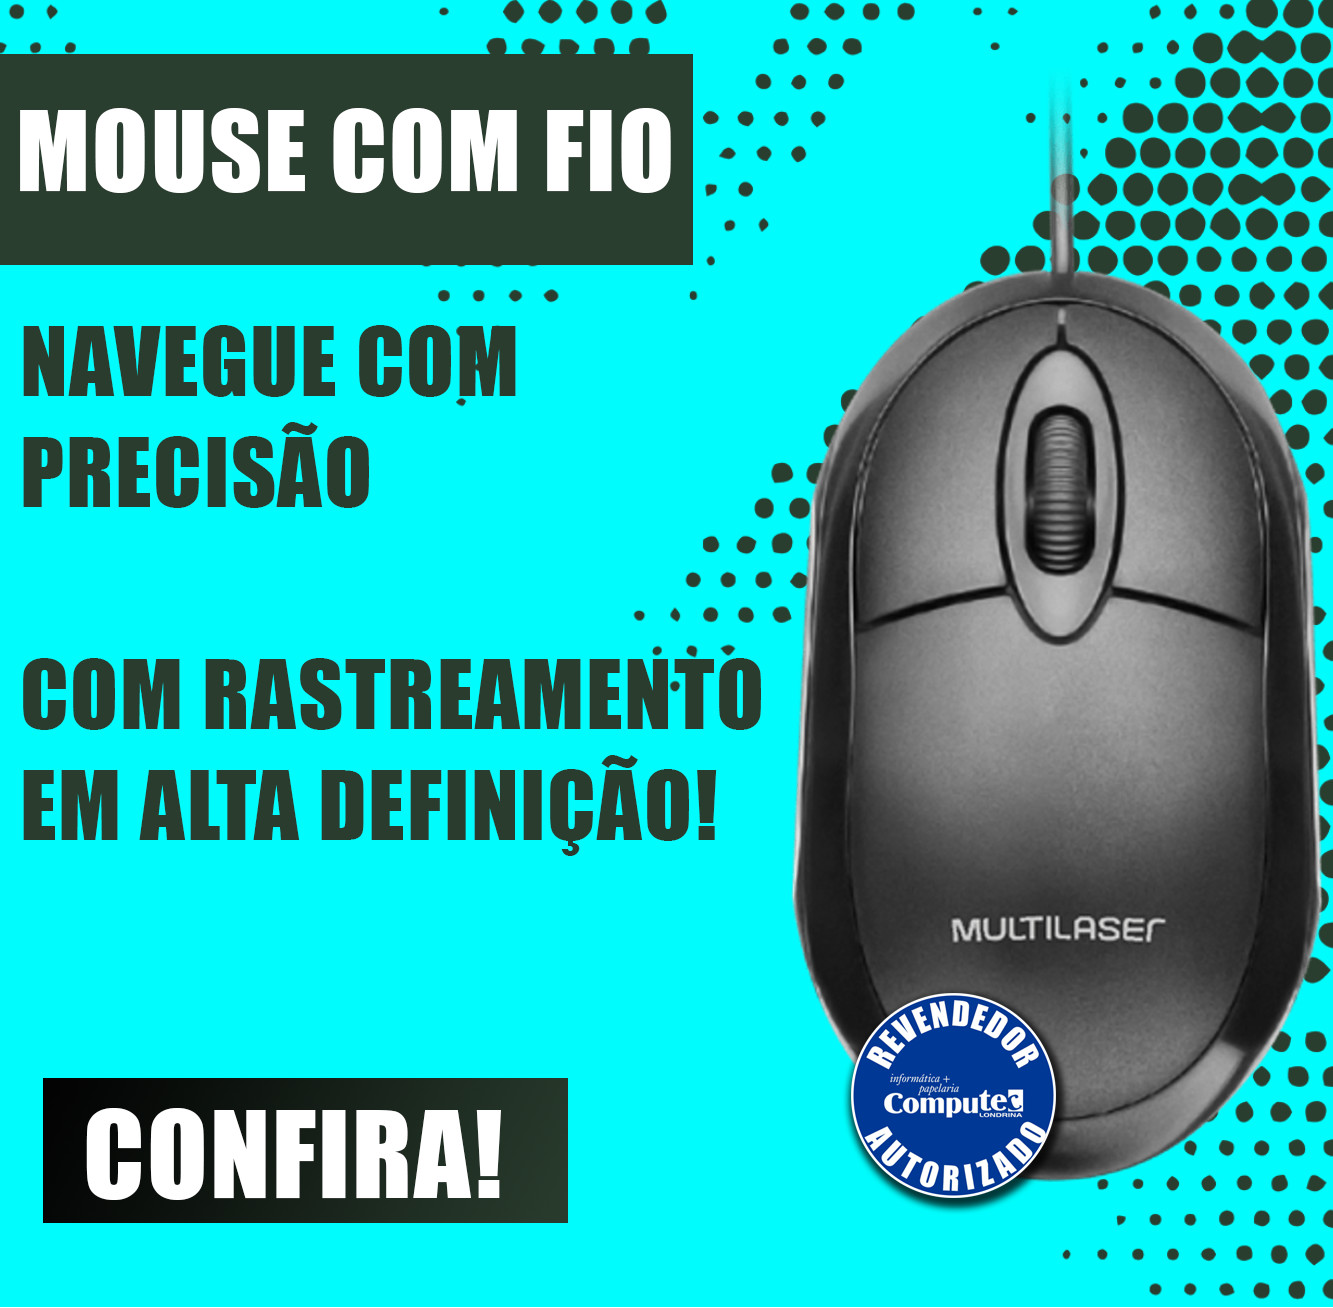 Mini mouse 2